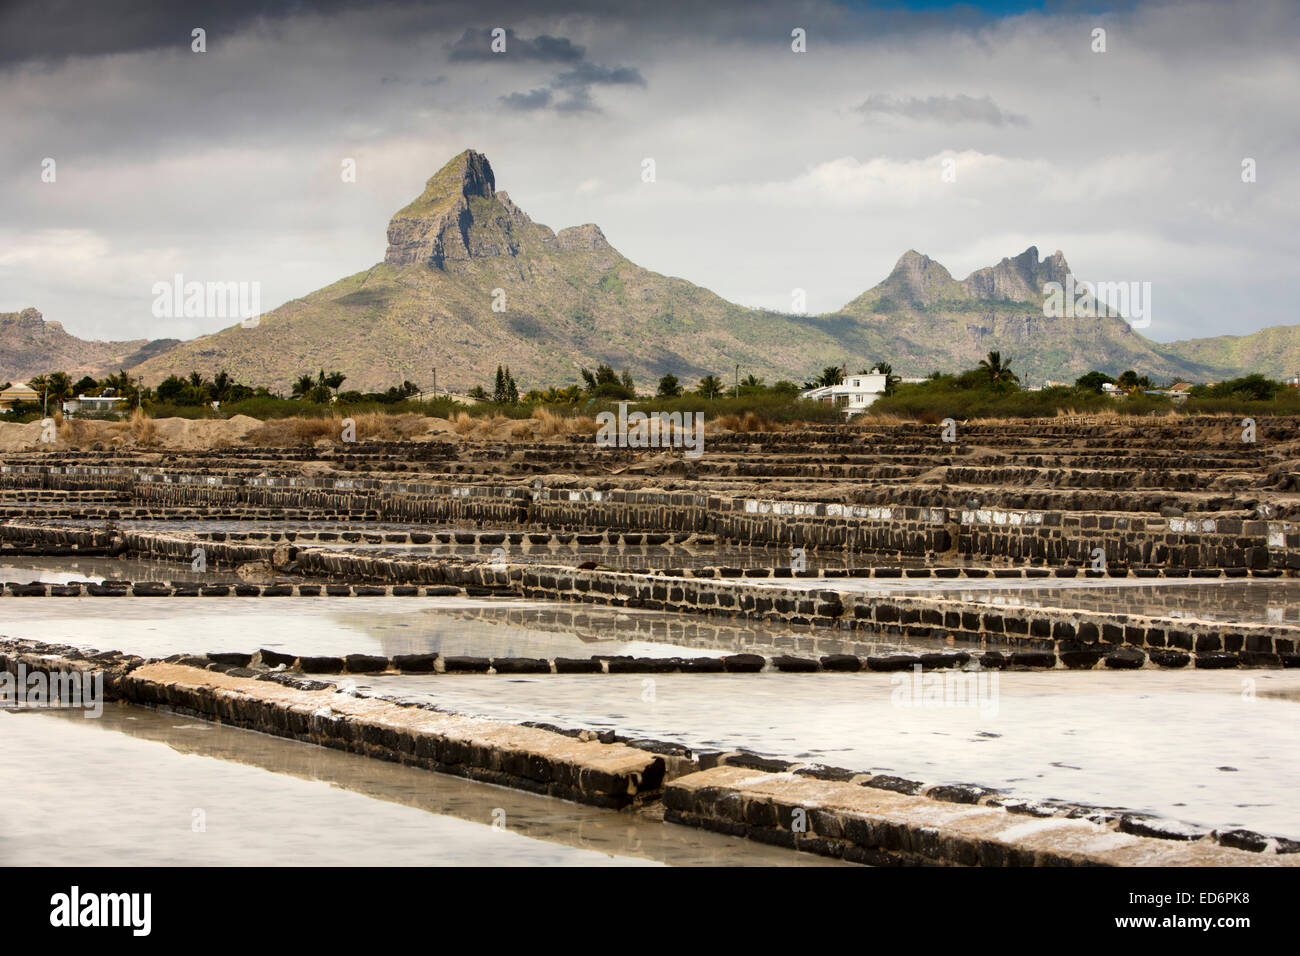 Mauritius, Tamarin, Montagne du Rempart and Trois Mamelles behind salt pans Stock Photo